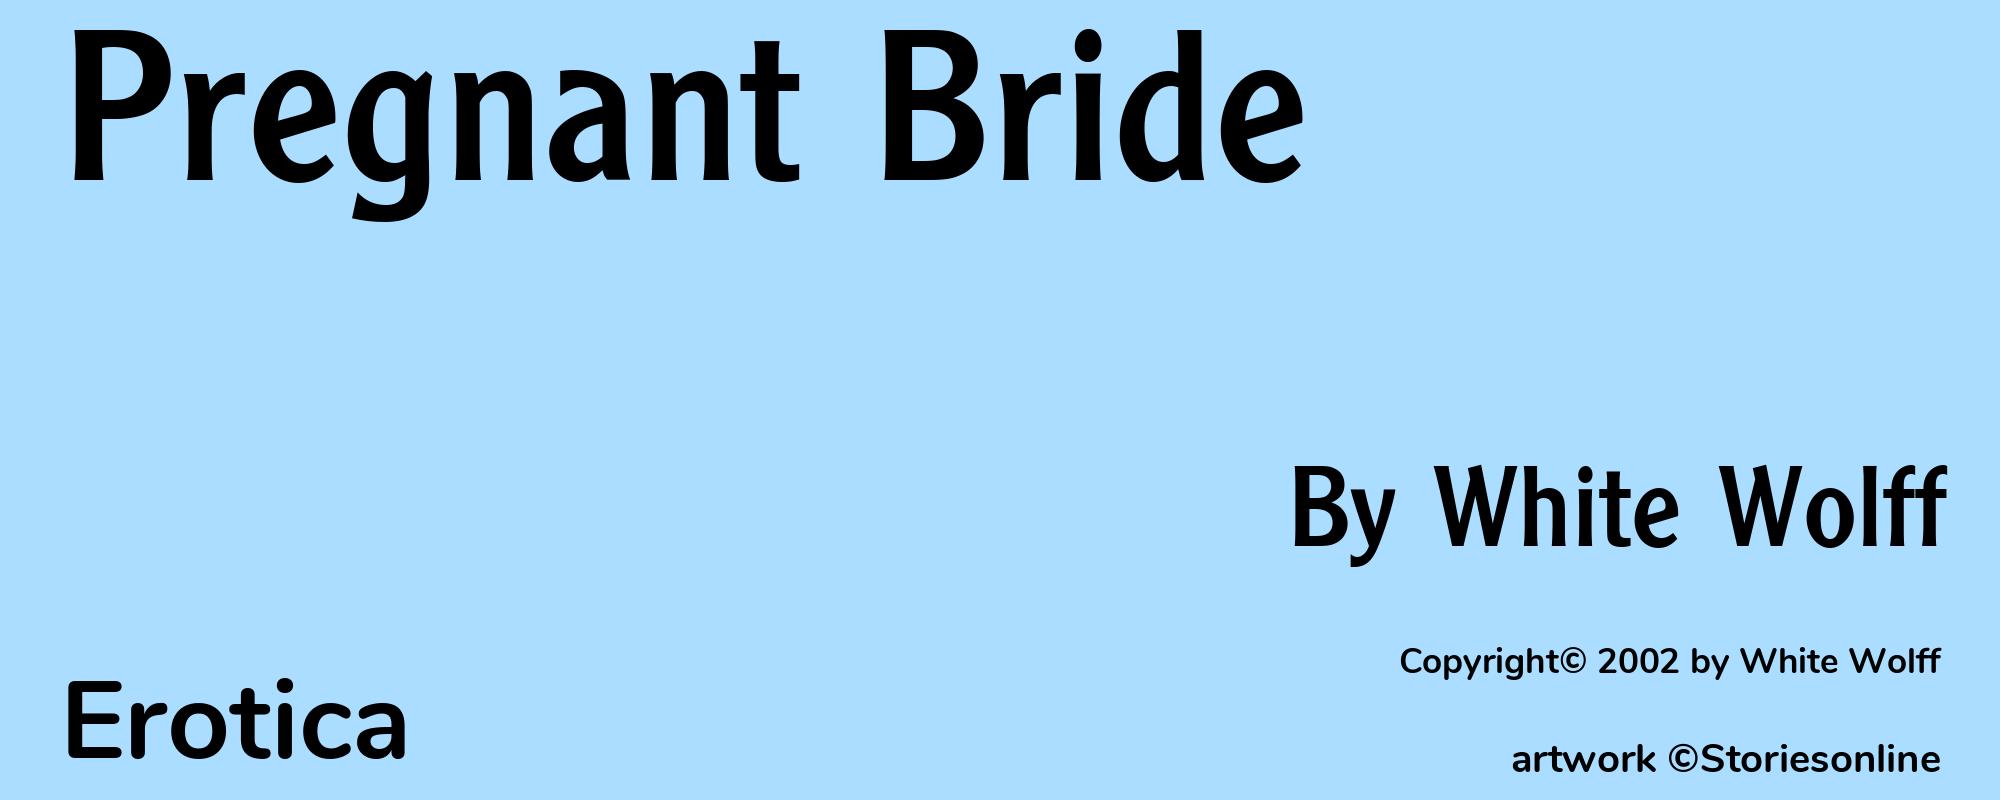 Pregnant Bride - Cover